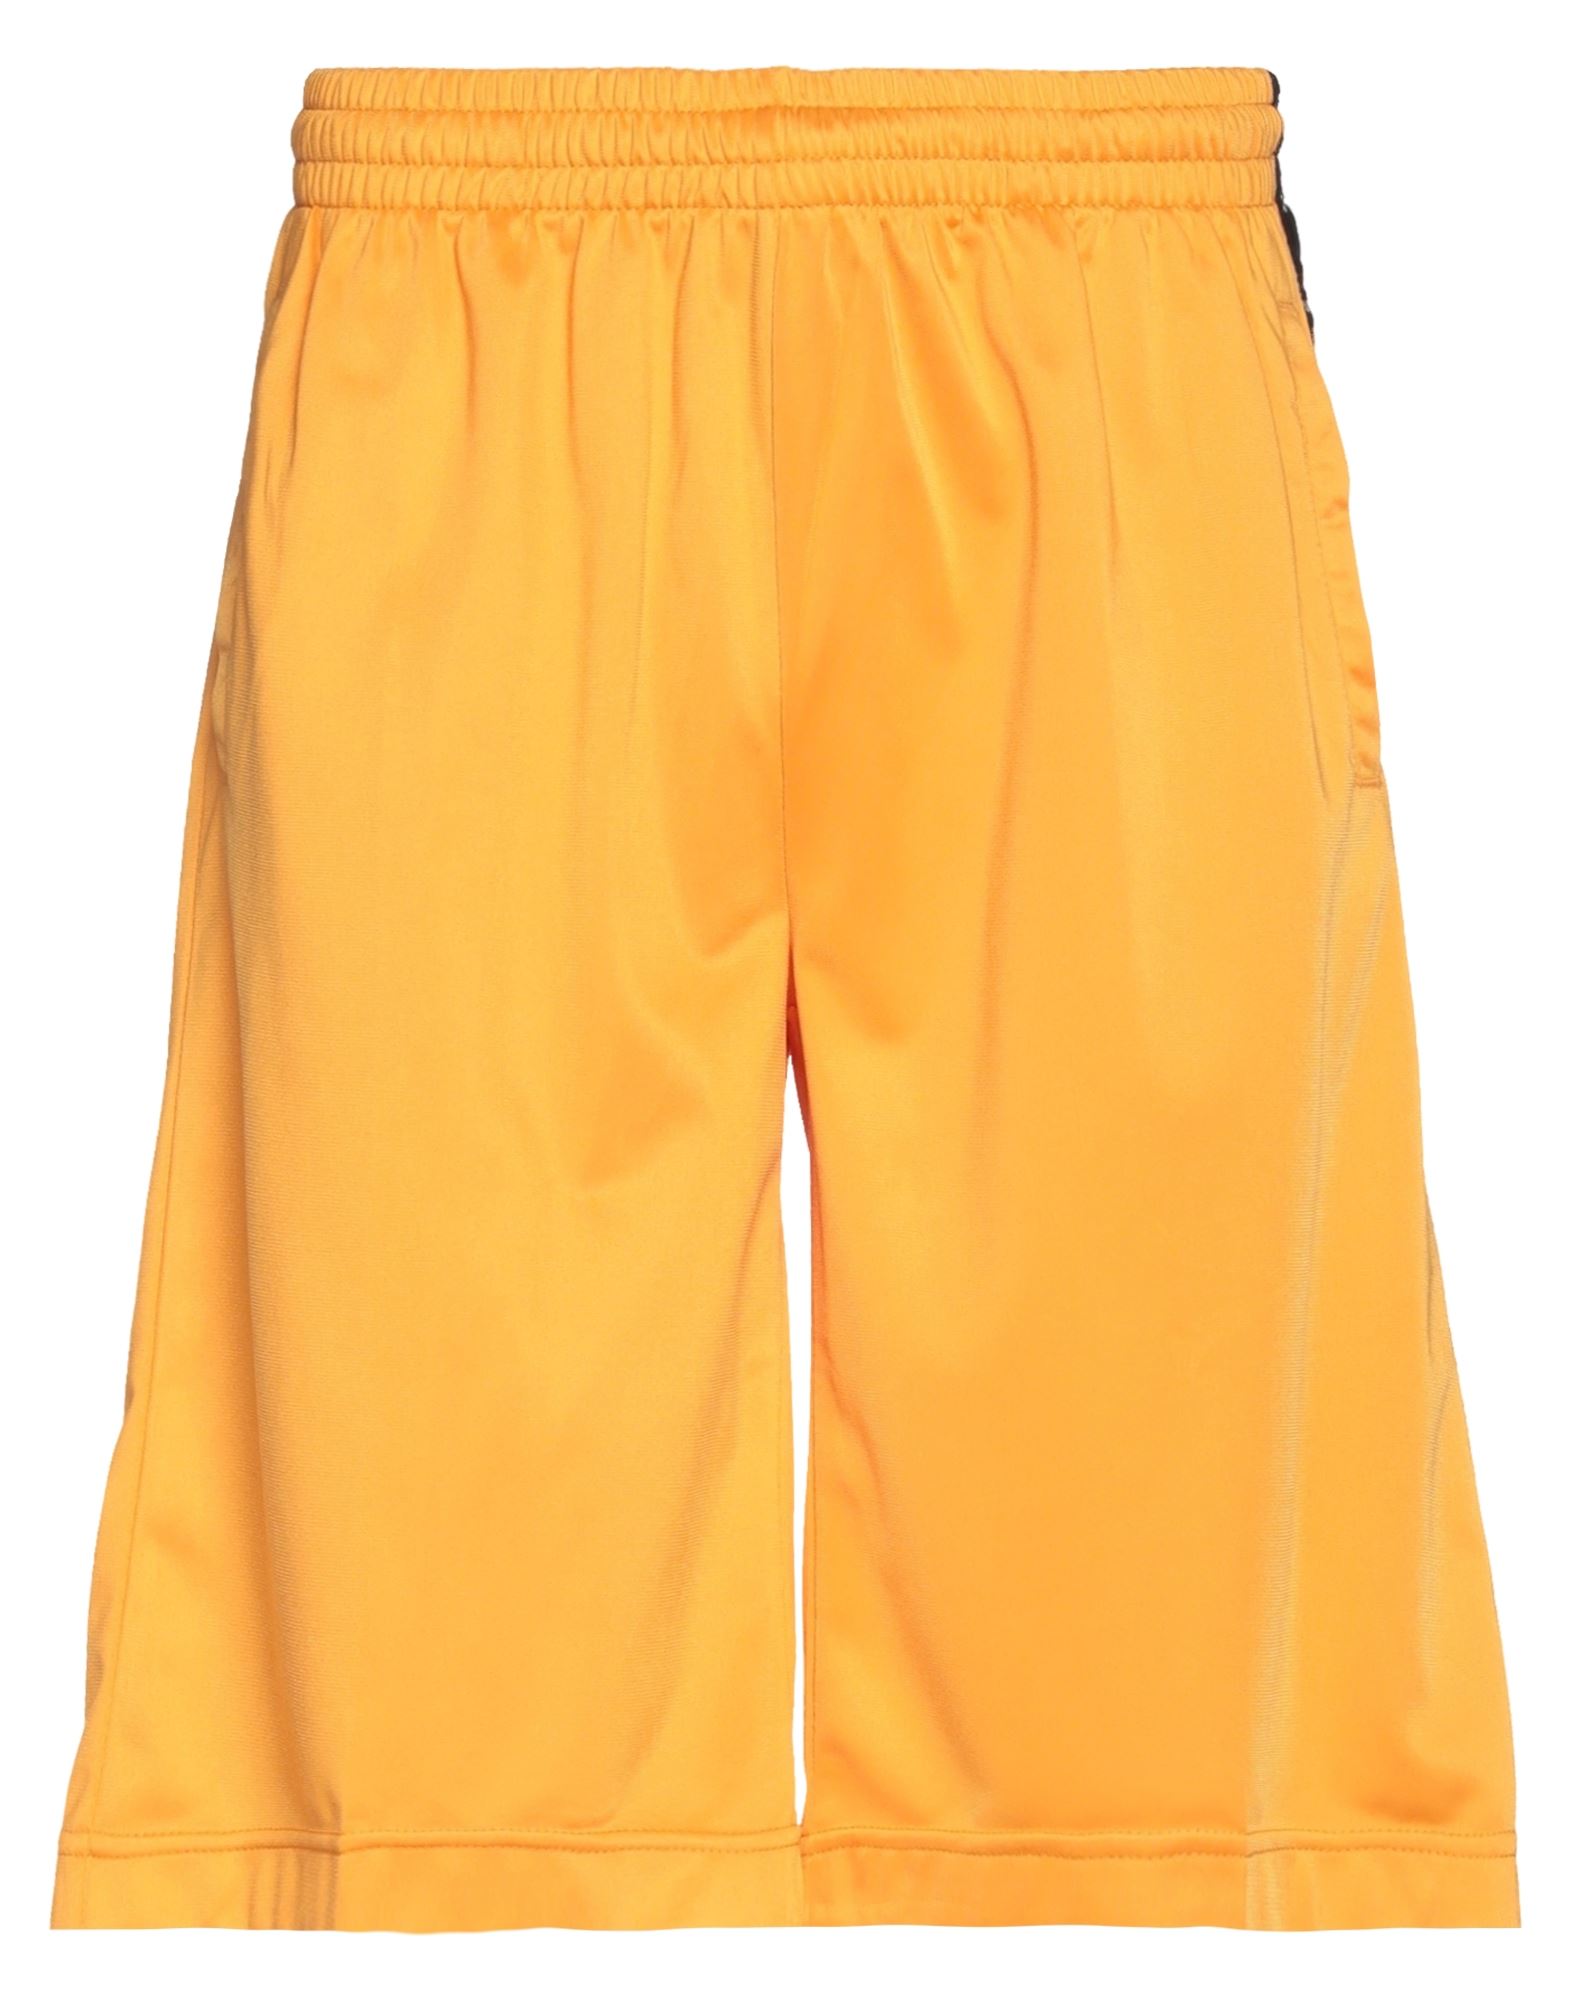 Kappa Man Shorts & Bermuda Shorts Orange Size M Polyester